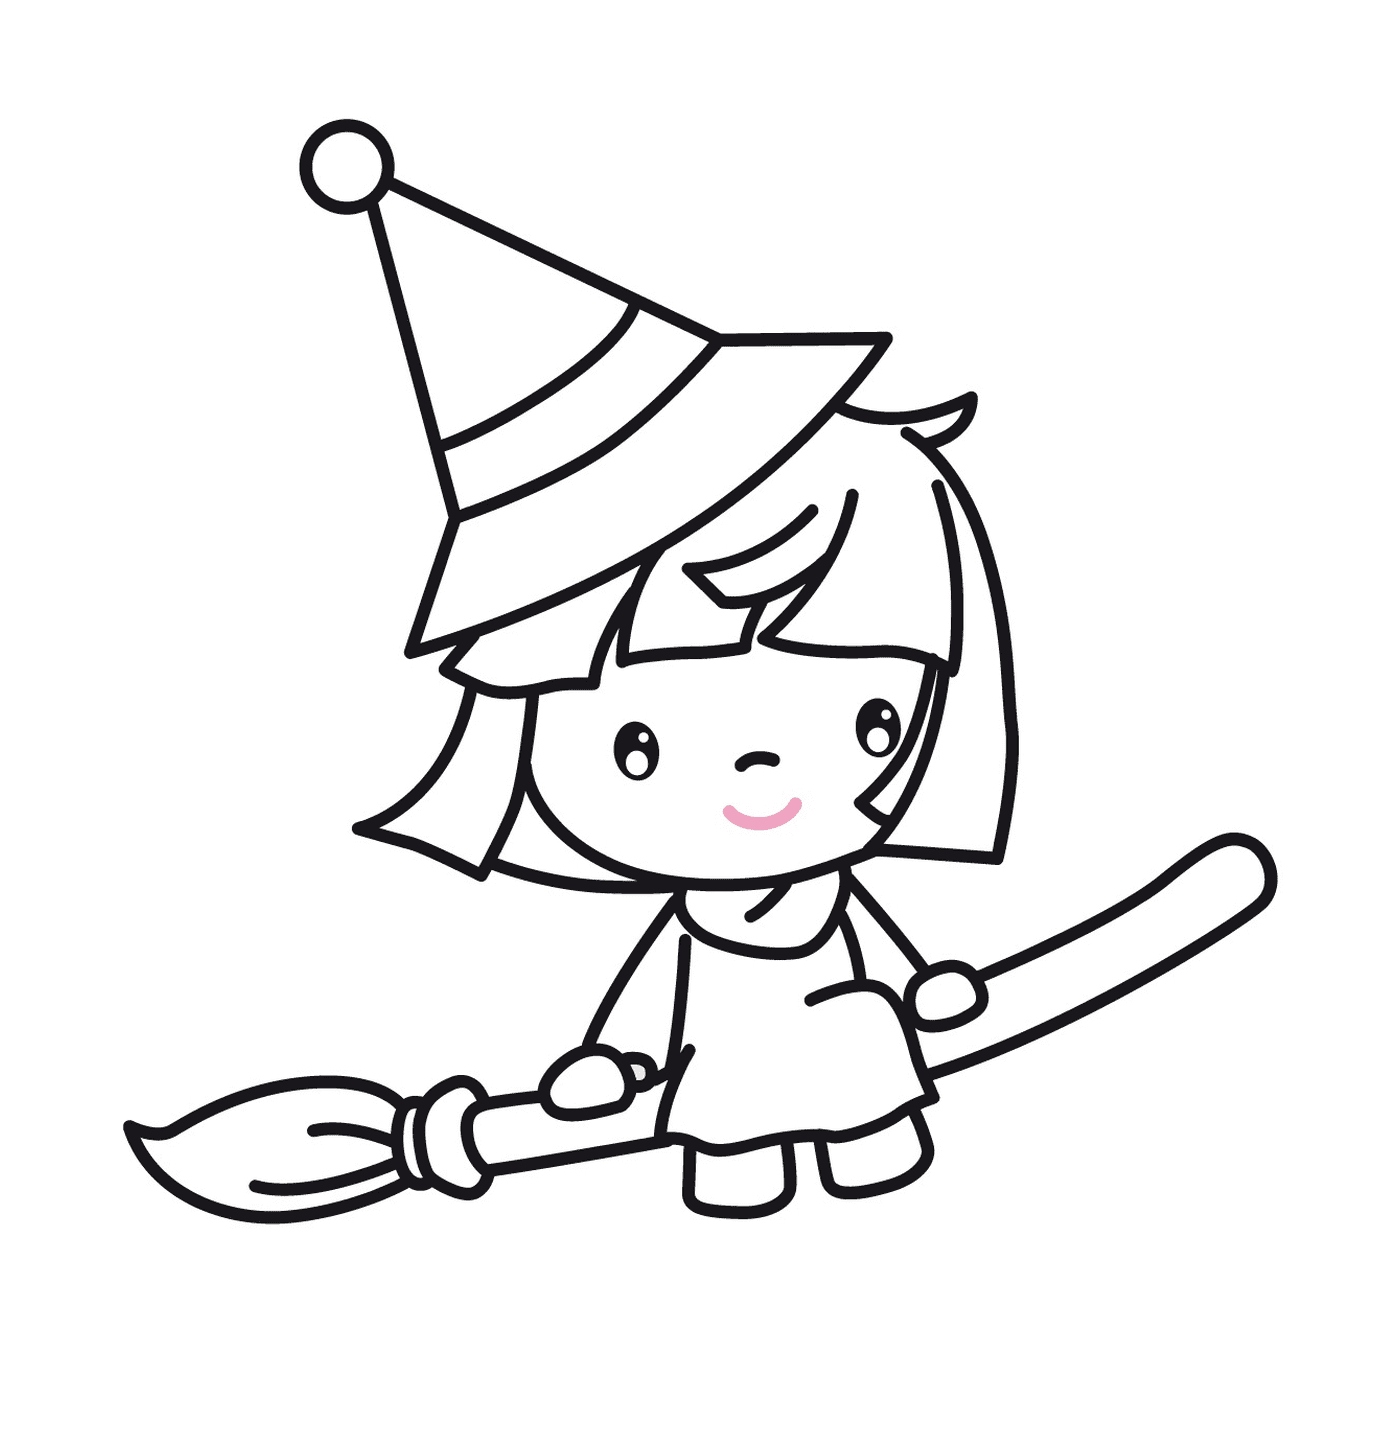  Lehrling Hexe trägt eine Party-Hut 